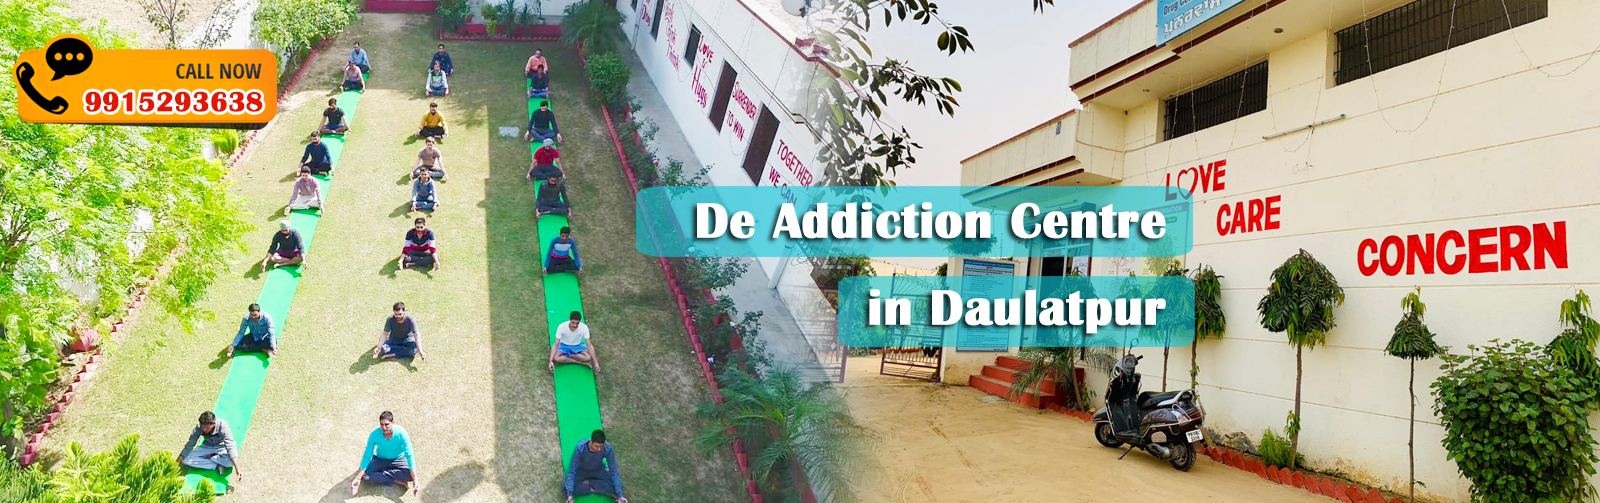 De Addiction Centre in Daulatpur